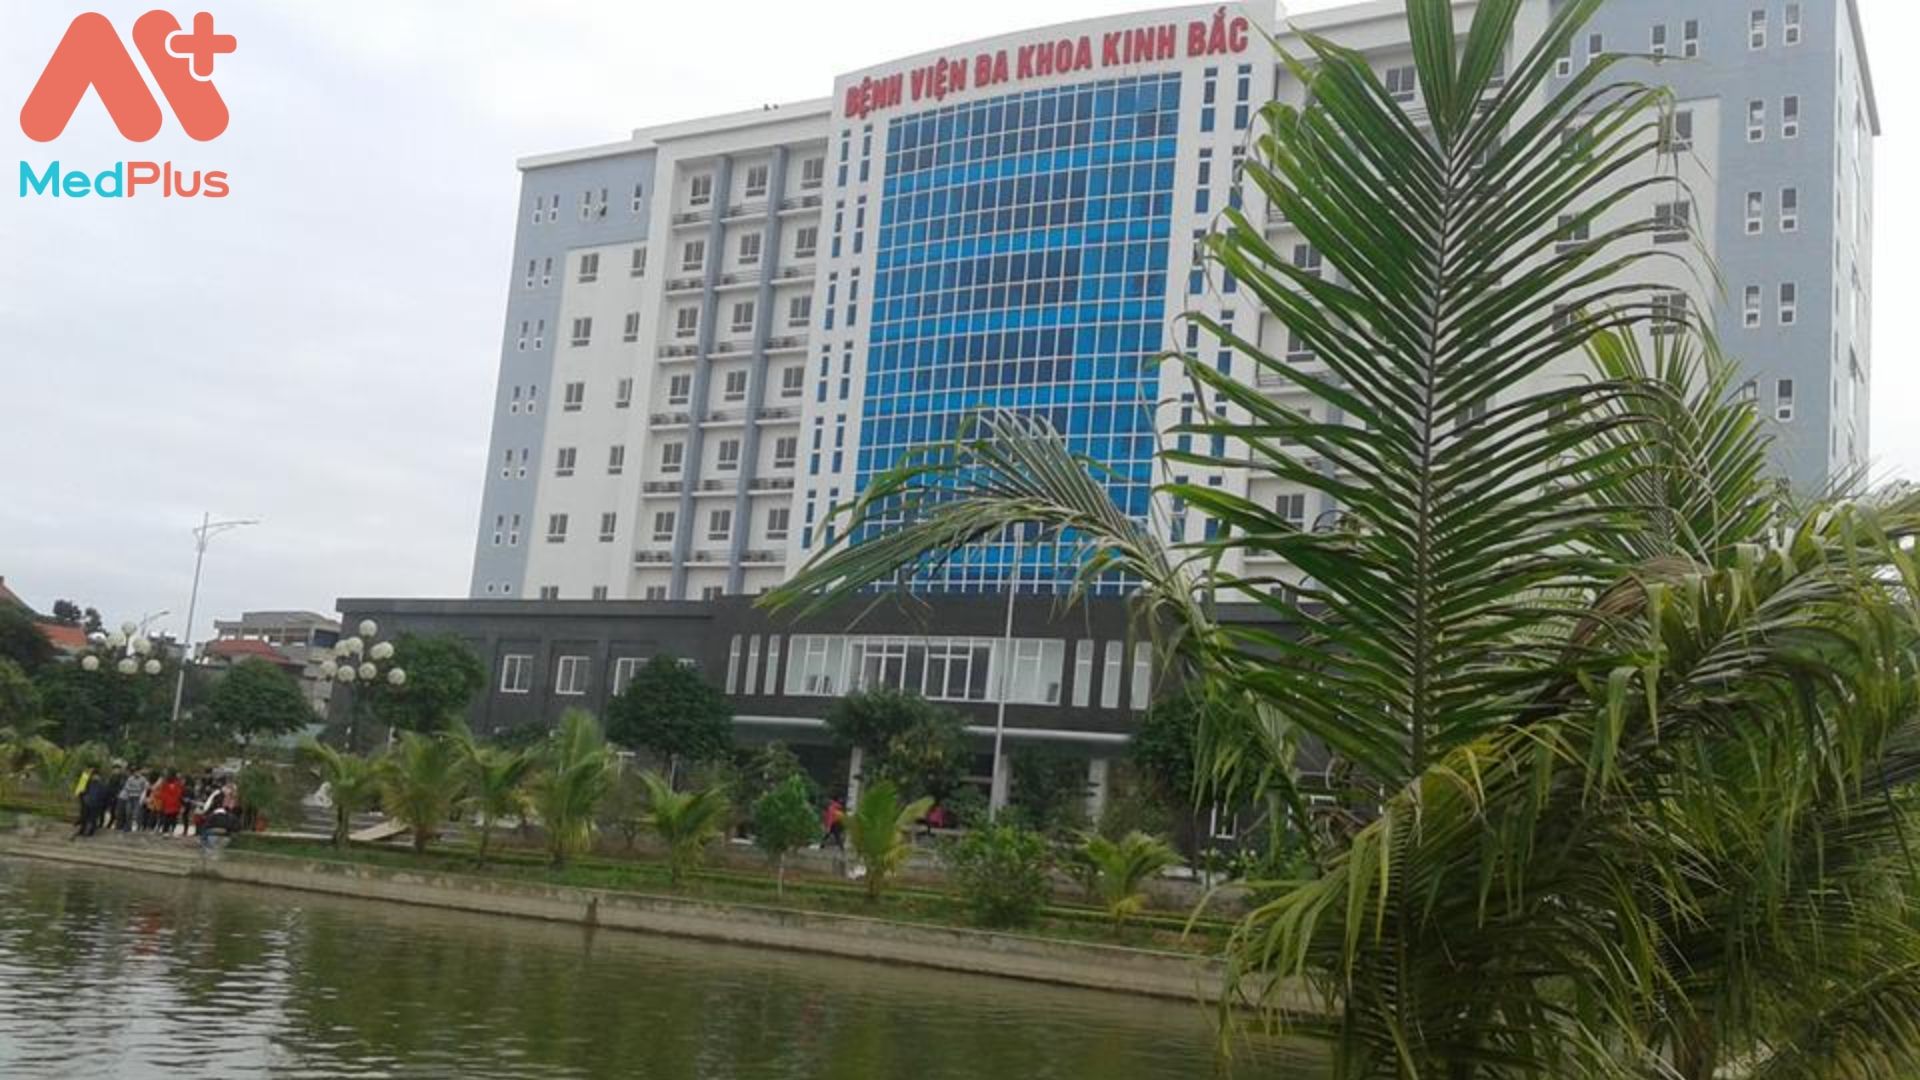 Bệnh viện Đa khoa Kinh Bắc